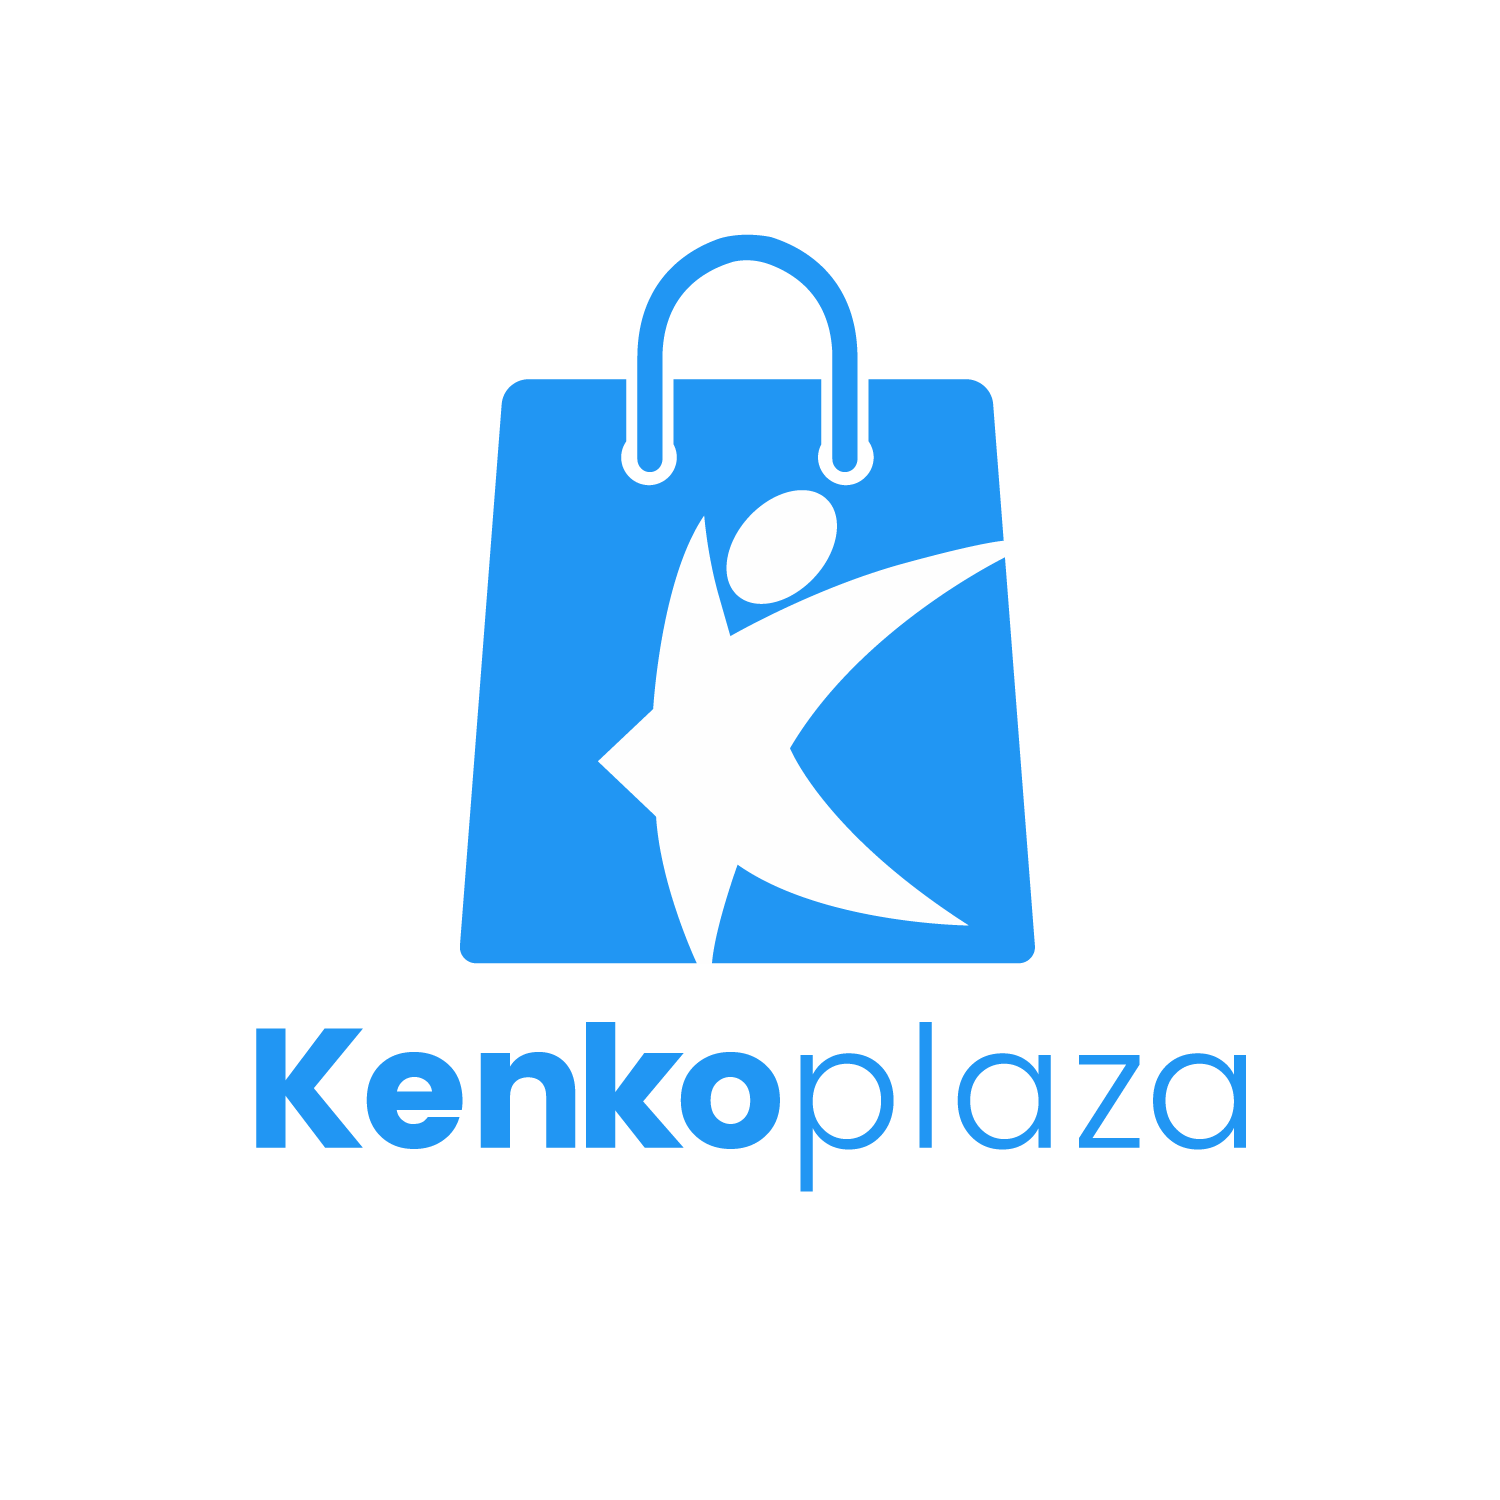 Kenko Plaza